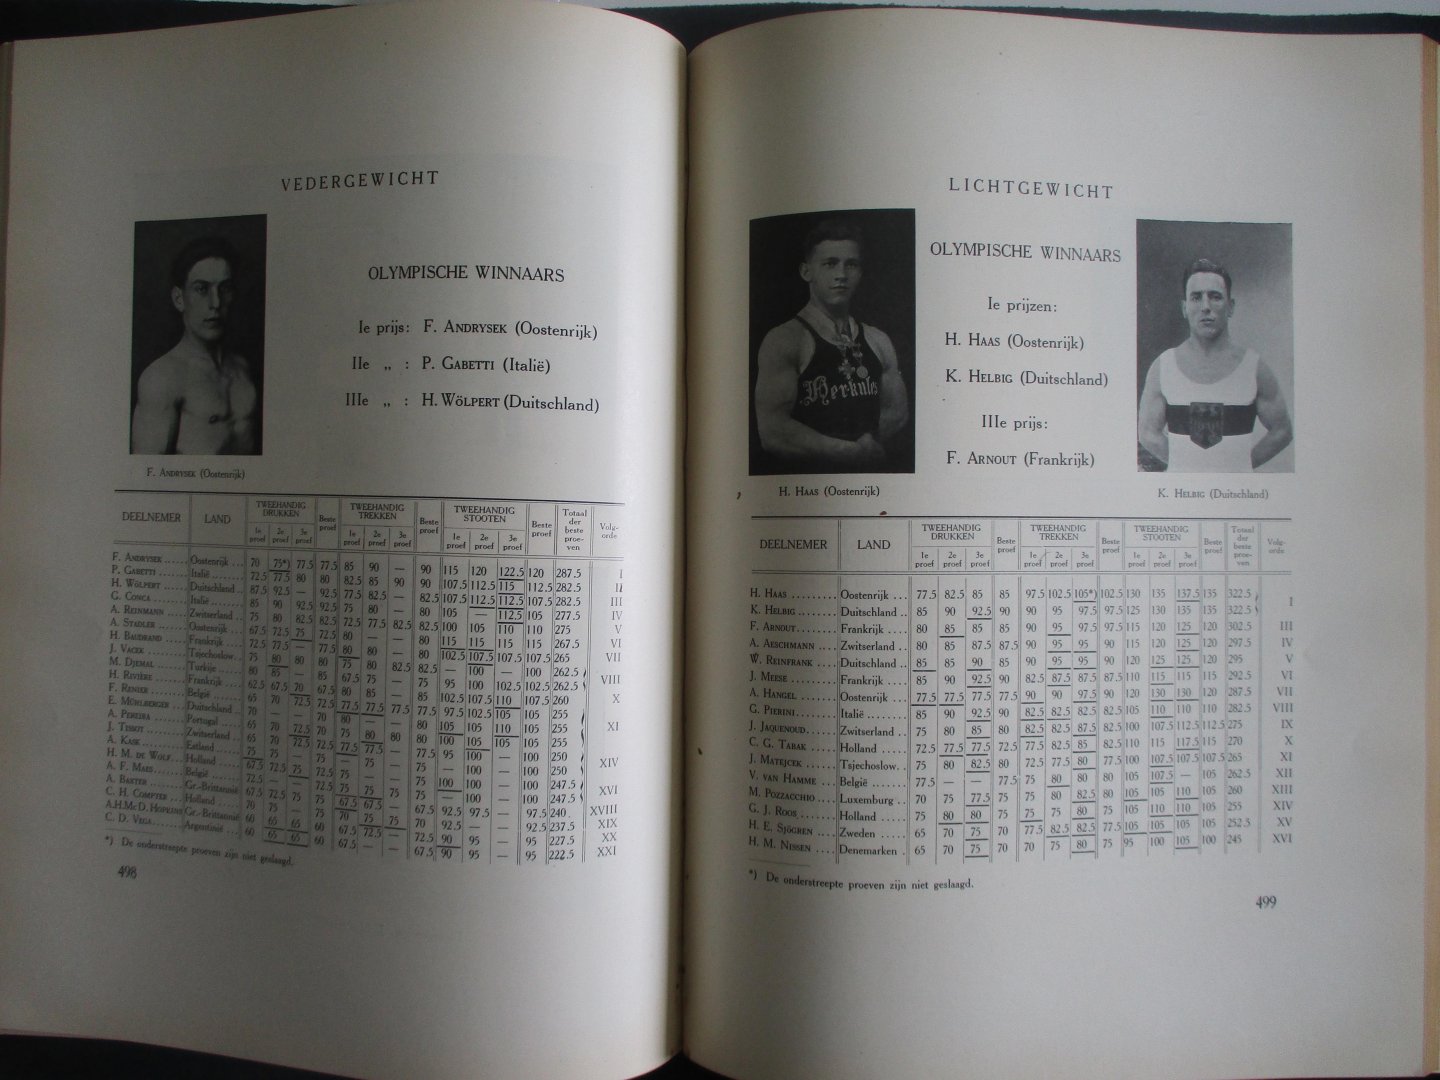 J.H. de Bussy, Amsterdam - IXe Olympiade 1928 Officieel gedenkboek Luxe editie